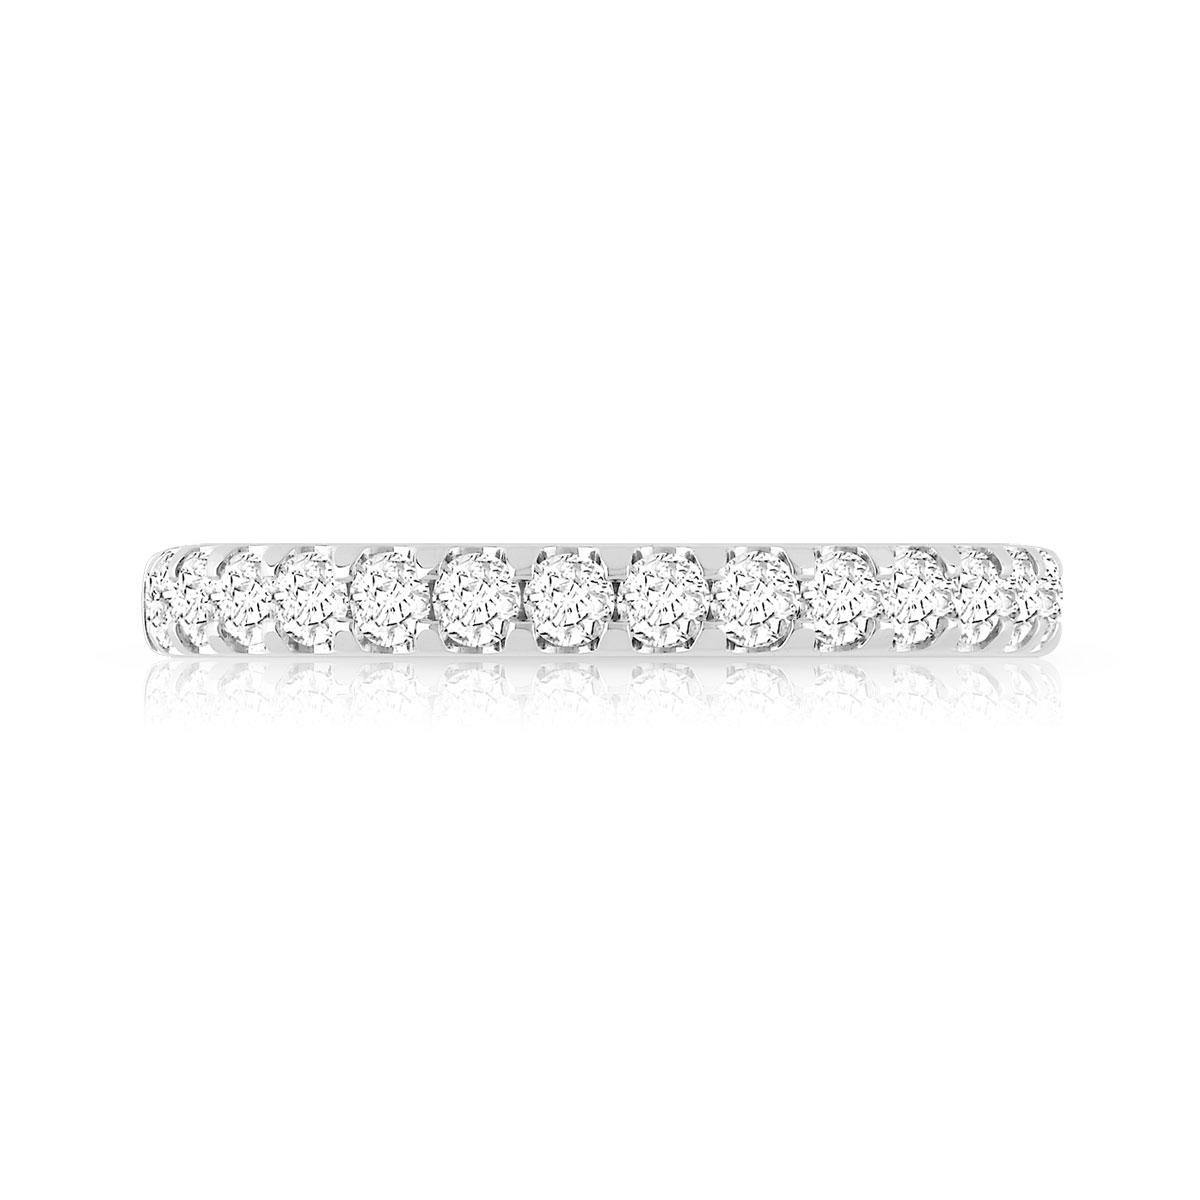 Alliance demi-T or 750 blanc diamants synthétiques 0.50 carat - vue 3